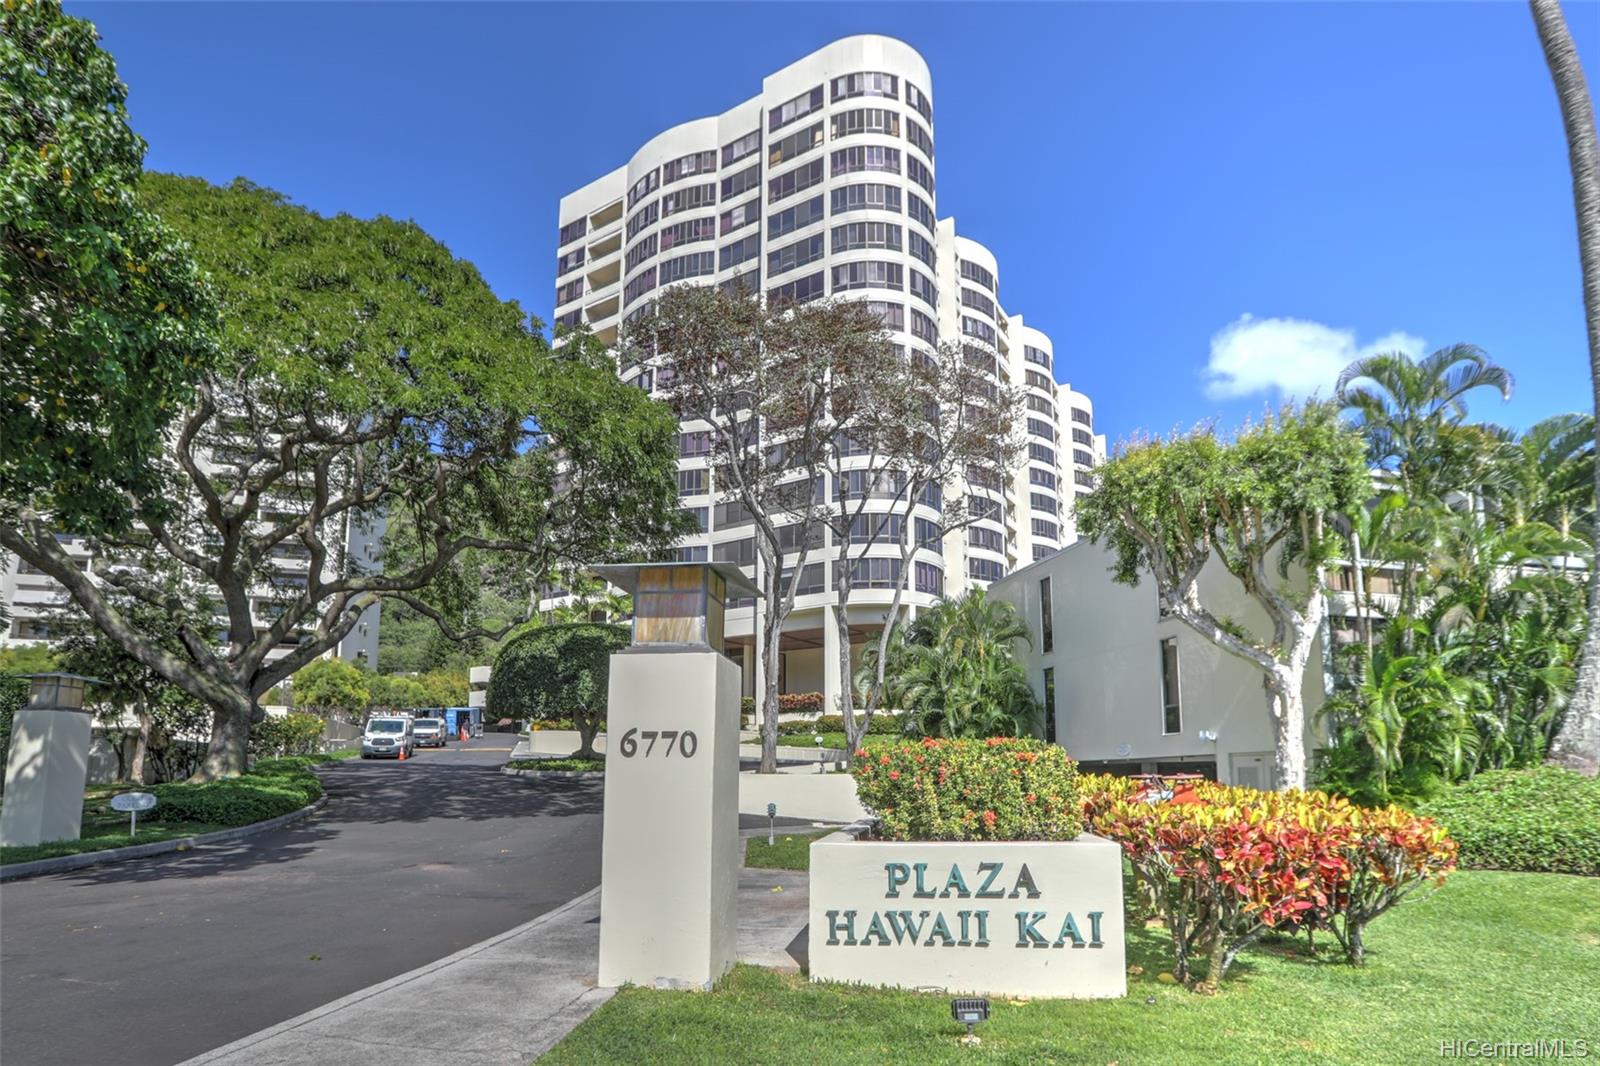 Plaza Hawaii Kai 6770 Hawaii Kai Drive  Unit 706